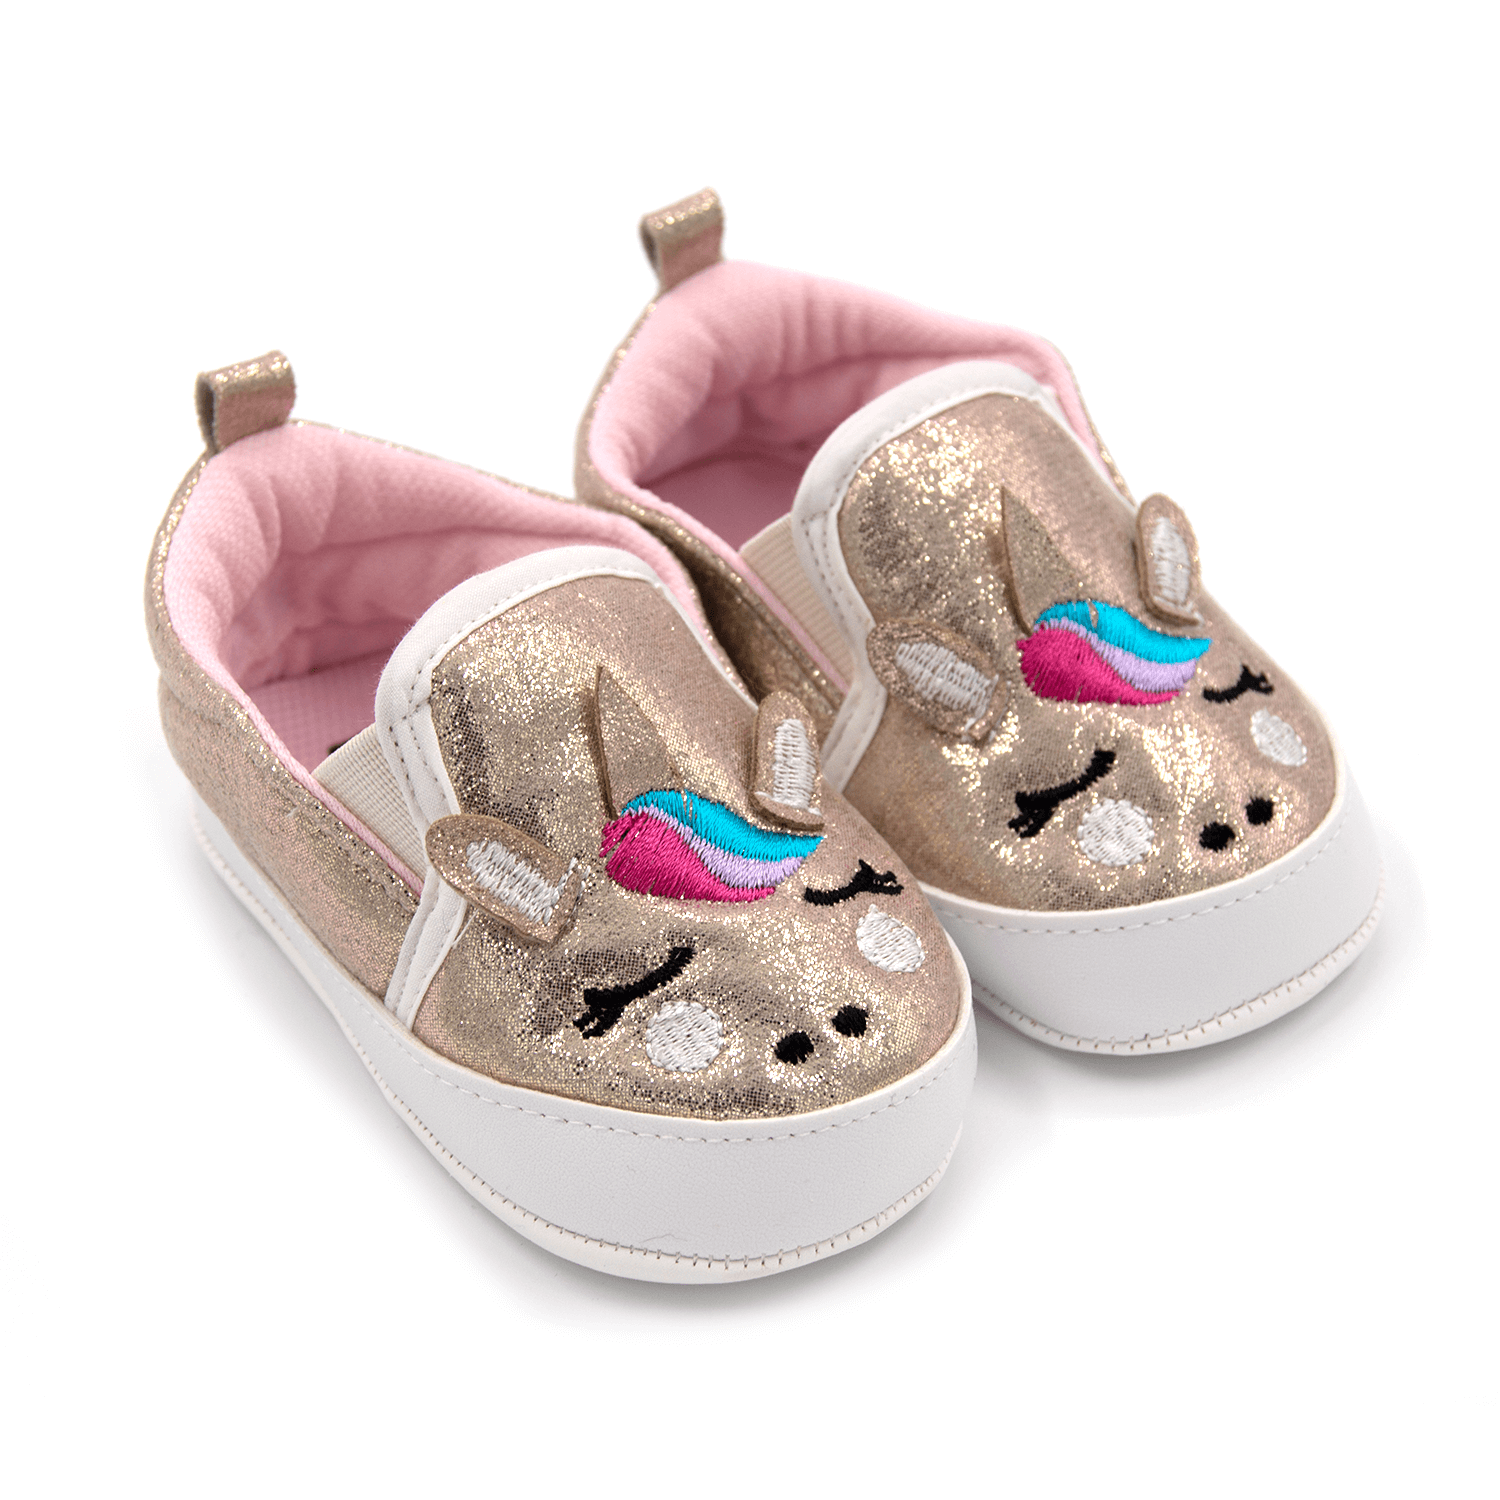 Funny Baby Premium Lastikli İlk Adım Ayakkabı 7020 Altın